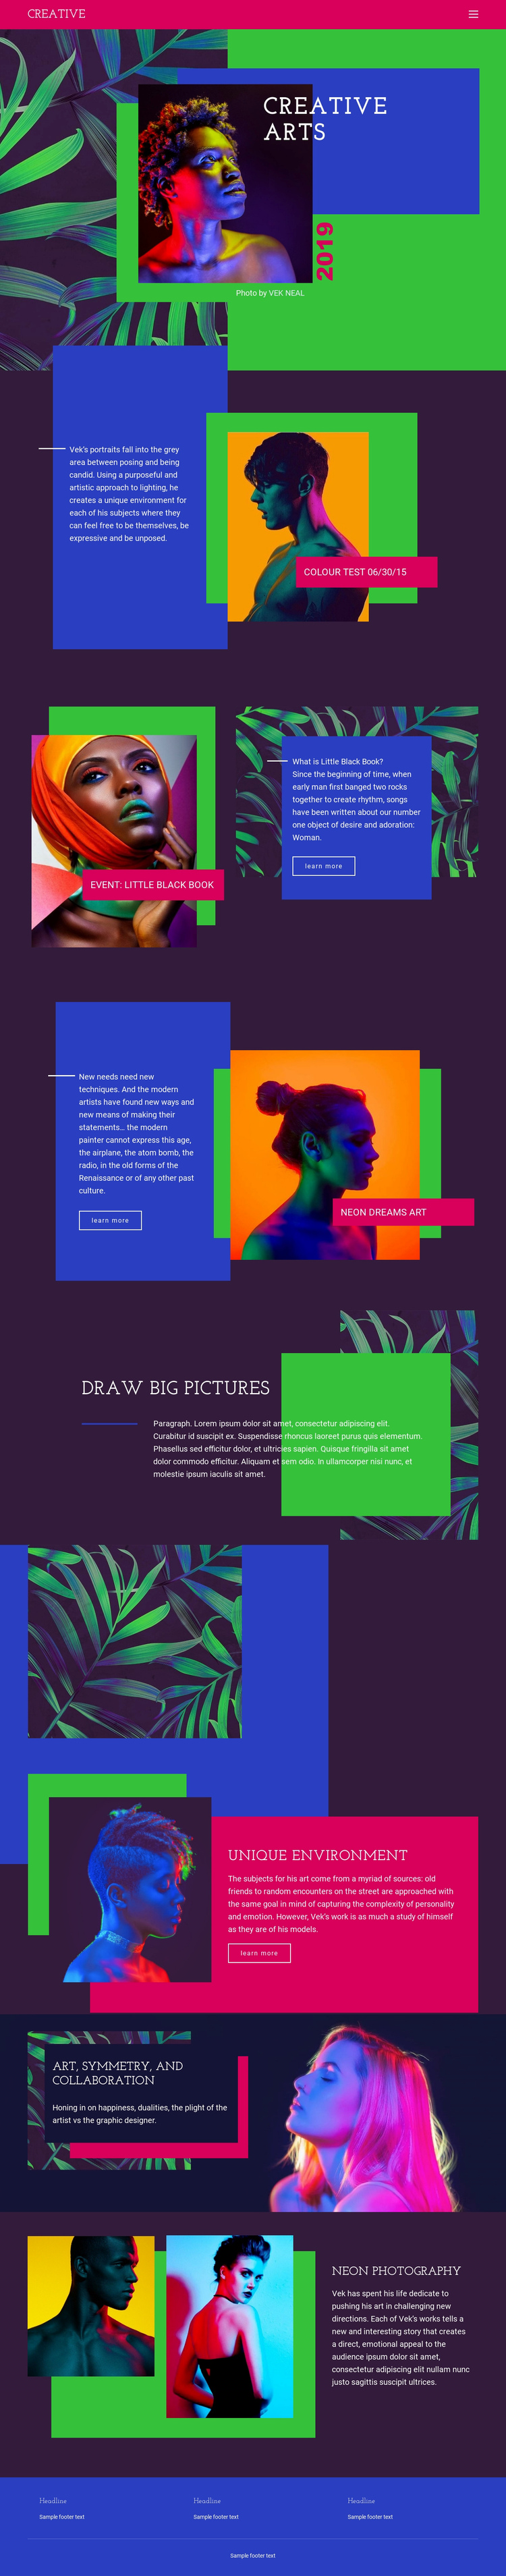 Creative Art Ideas Website Builder Software